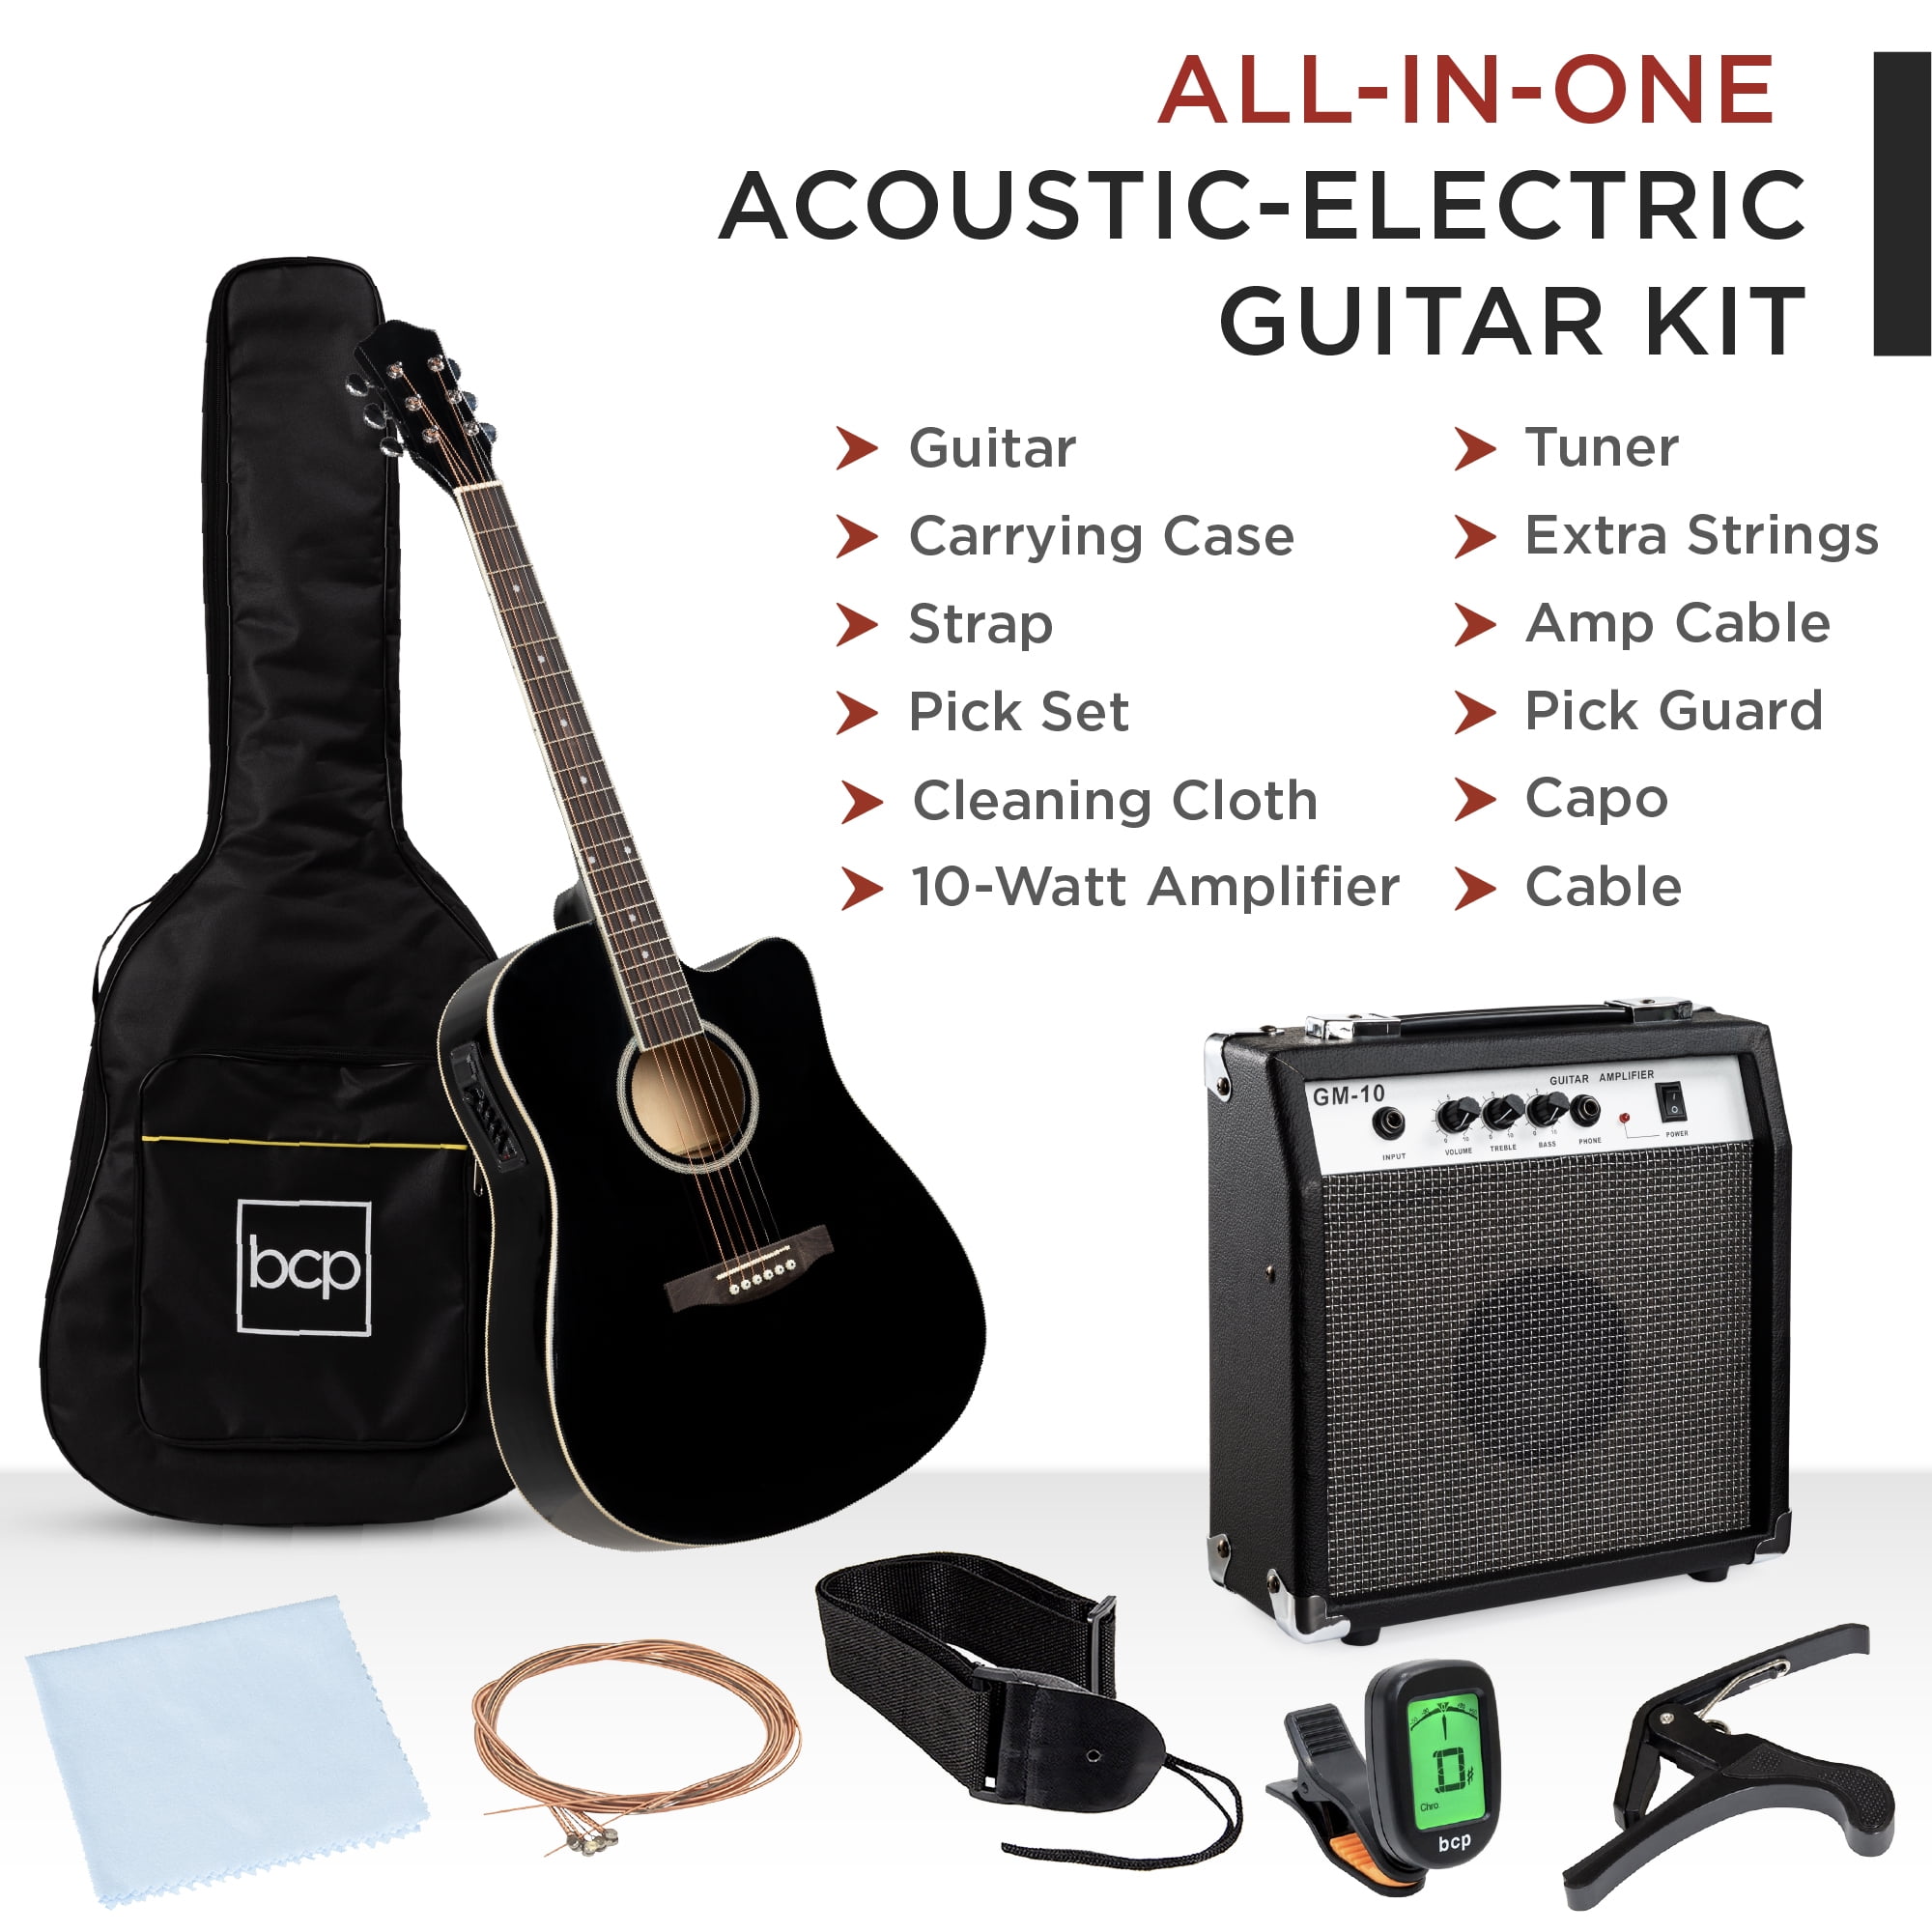 枚数限定 Best Choice Products 41in Beginner Acoustic Guitar Full Size All Wood  Cutaway Guitar Starter Set Bundle with Case, Strap, Capo, Strings, Picks,  Tuner